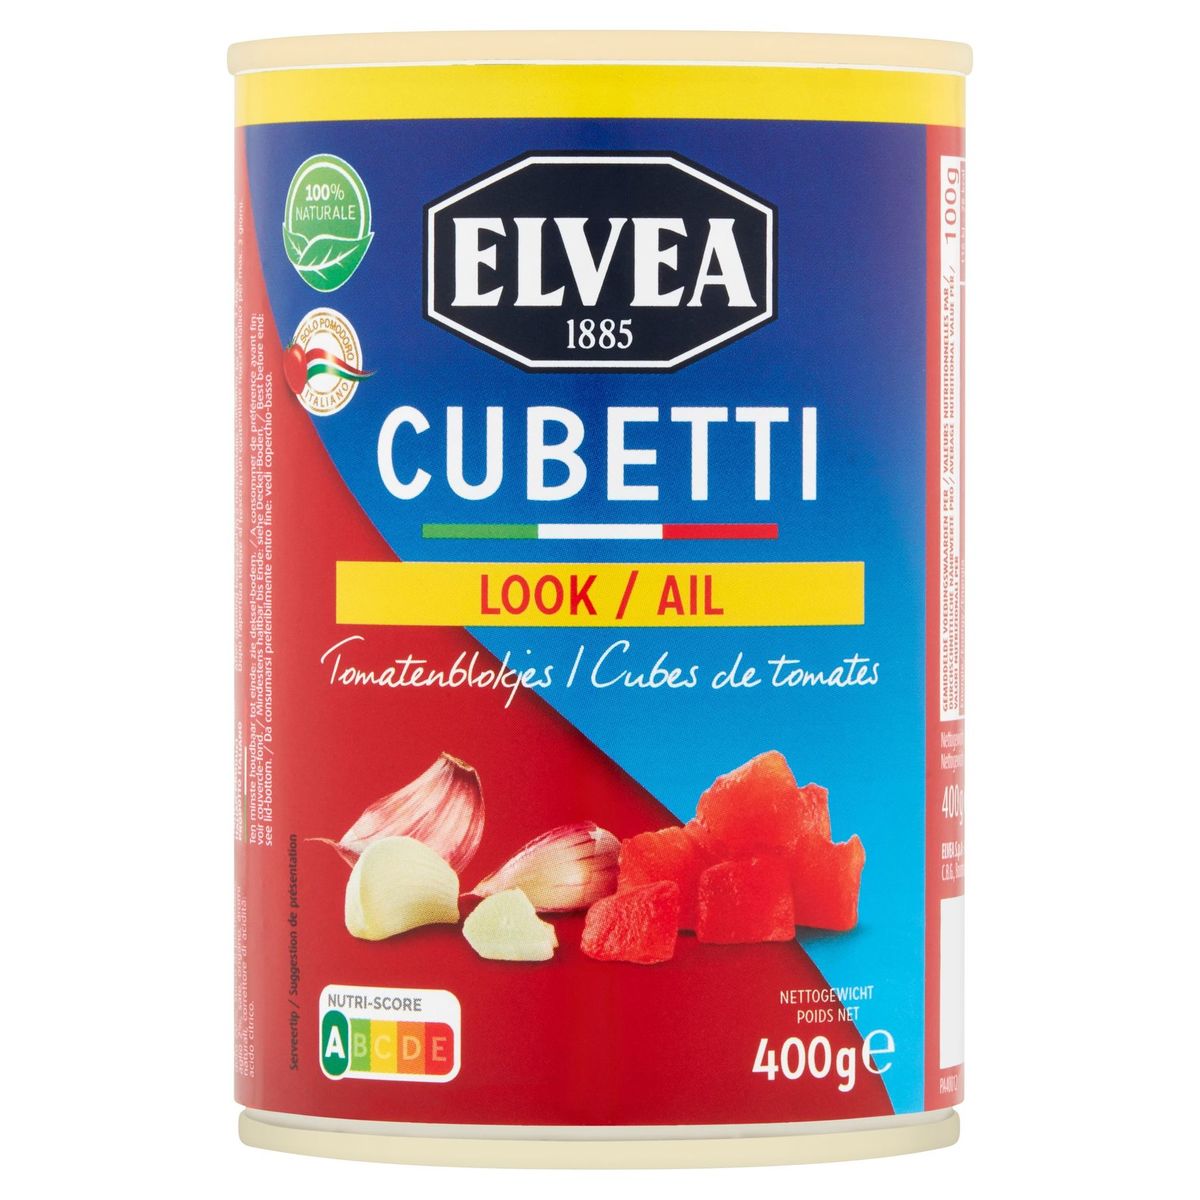 Elvea Cubetti Look Tomatenblokjes 400 g